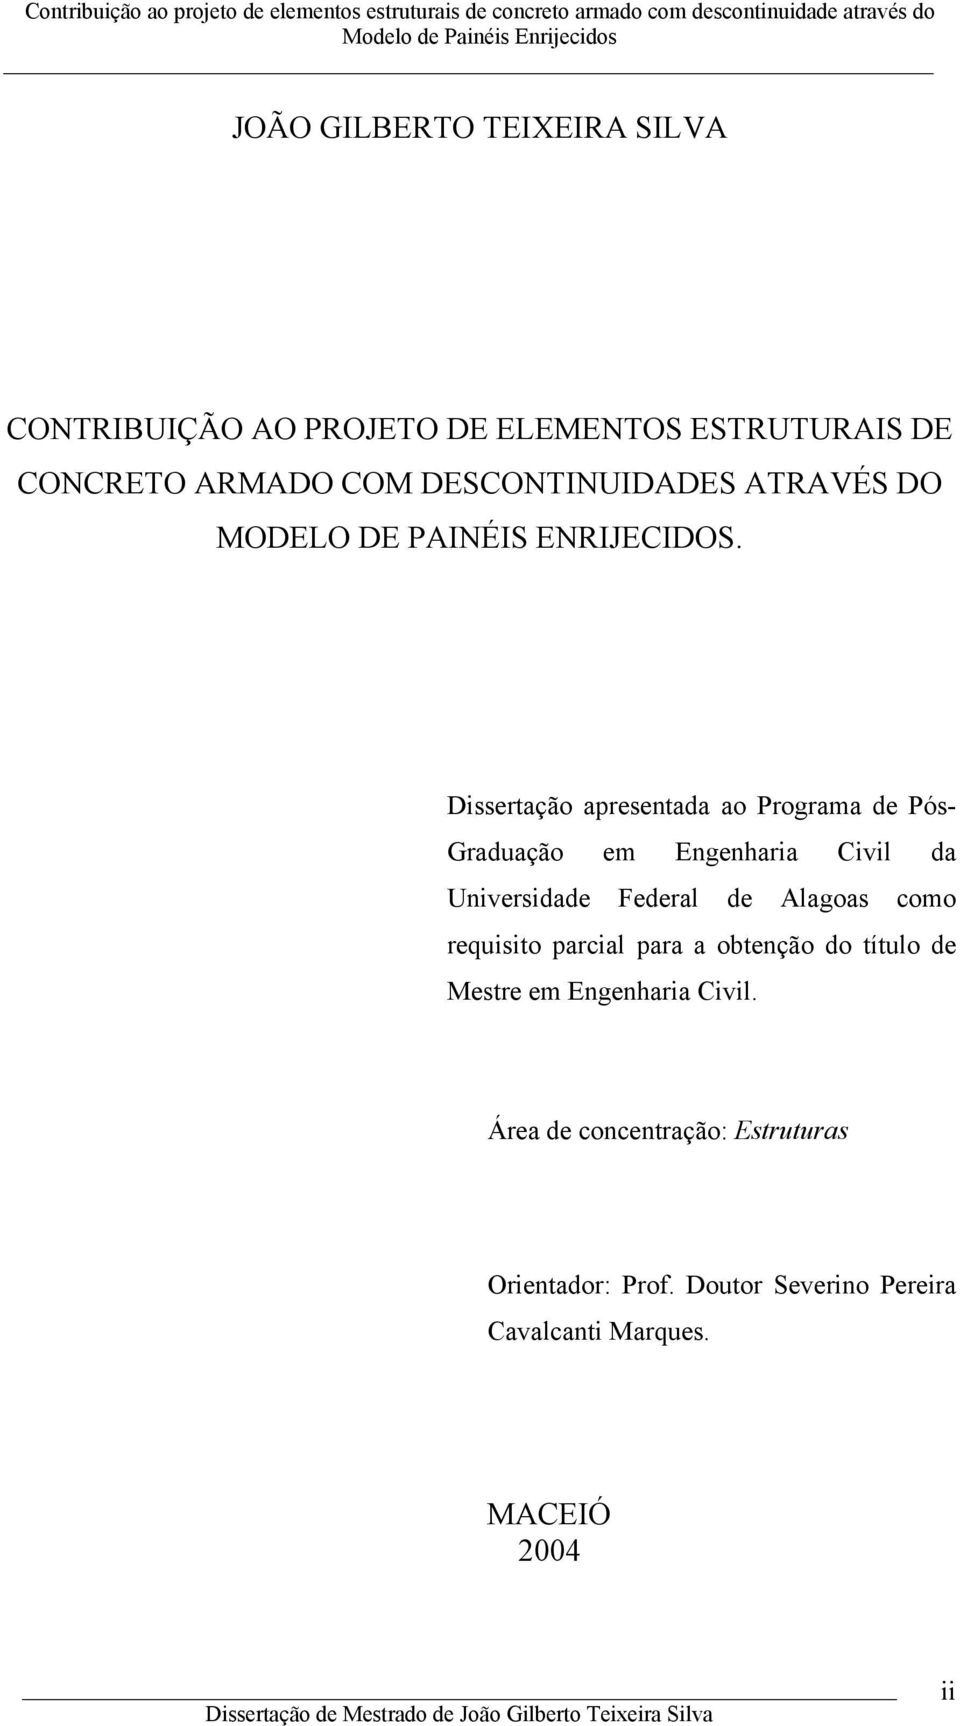 Dissertação apresentada ao Programa de Pós- Graduação em Engenharia Civil da Universidade Federal de Alagoas